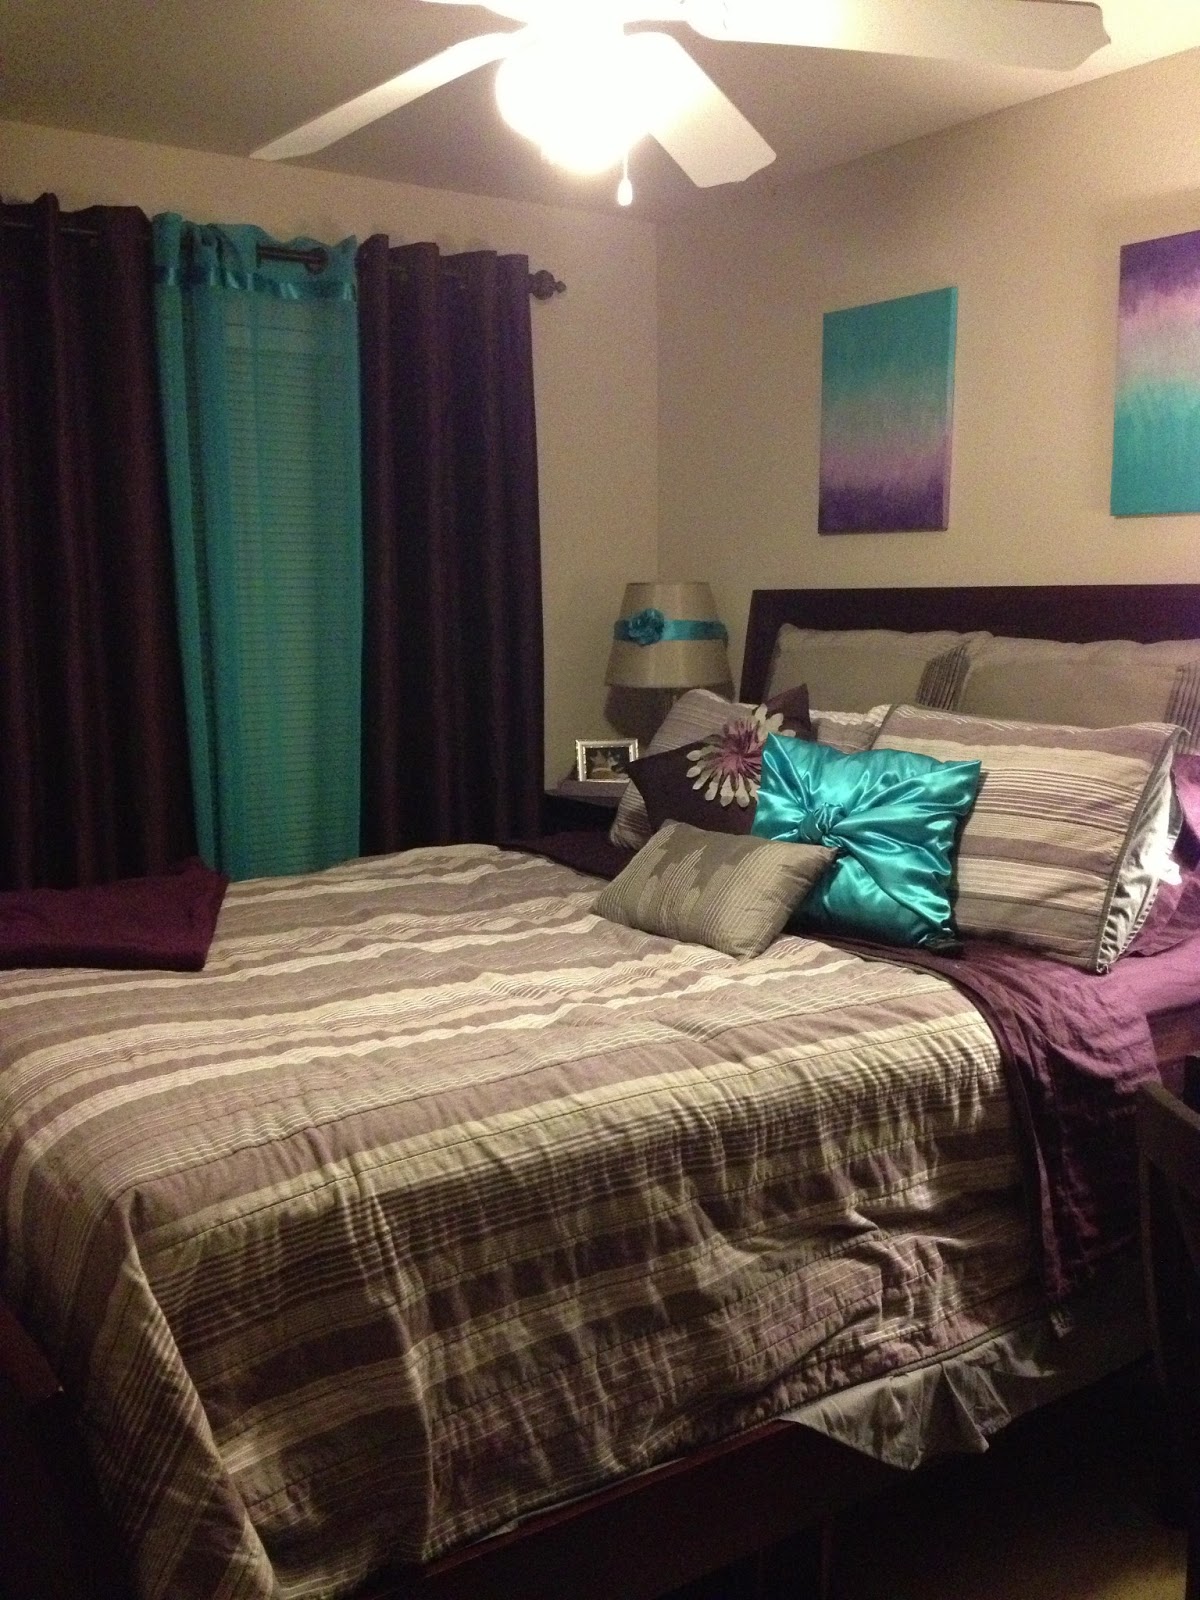 Purple and Teal Bedroom Ideas